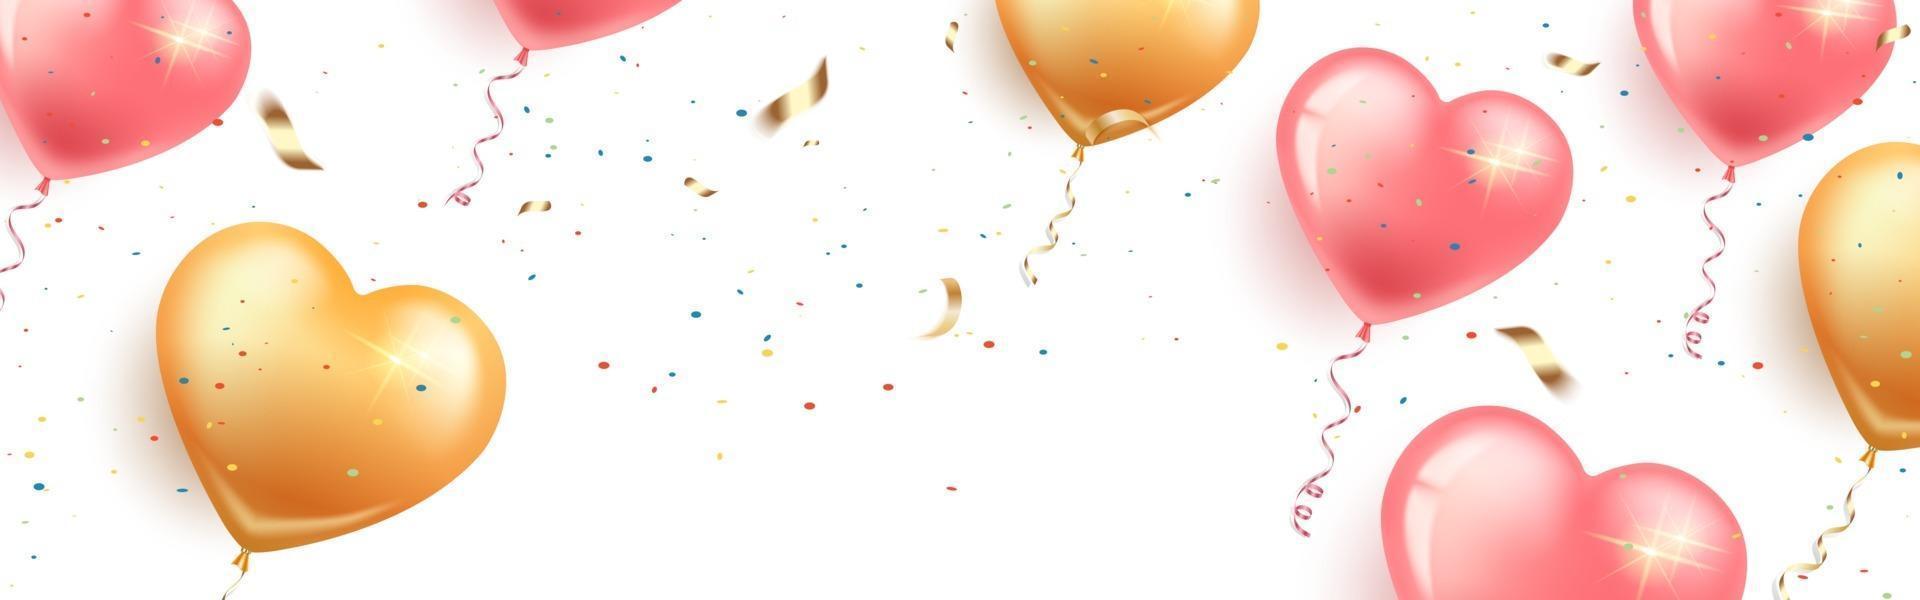 feestelijke horizontale banner met roze en gouden hartvormige ballonnen, confetti en serpentijn. kaart gelukkige verjaardag, vrouwendag, valentijnsdag, bruiloft. geïsoleerde witte achtergrond. vector